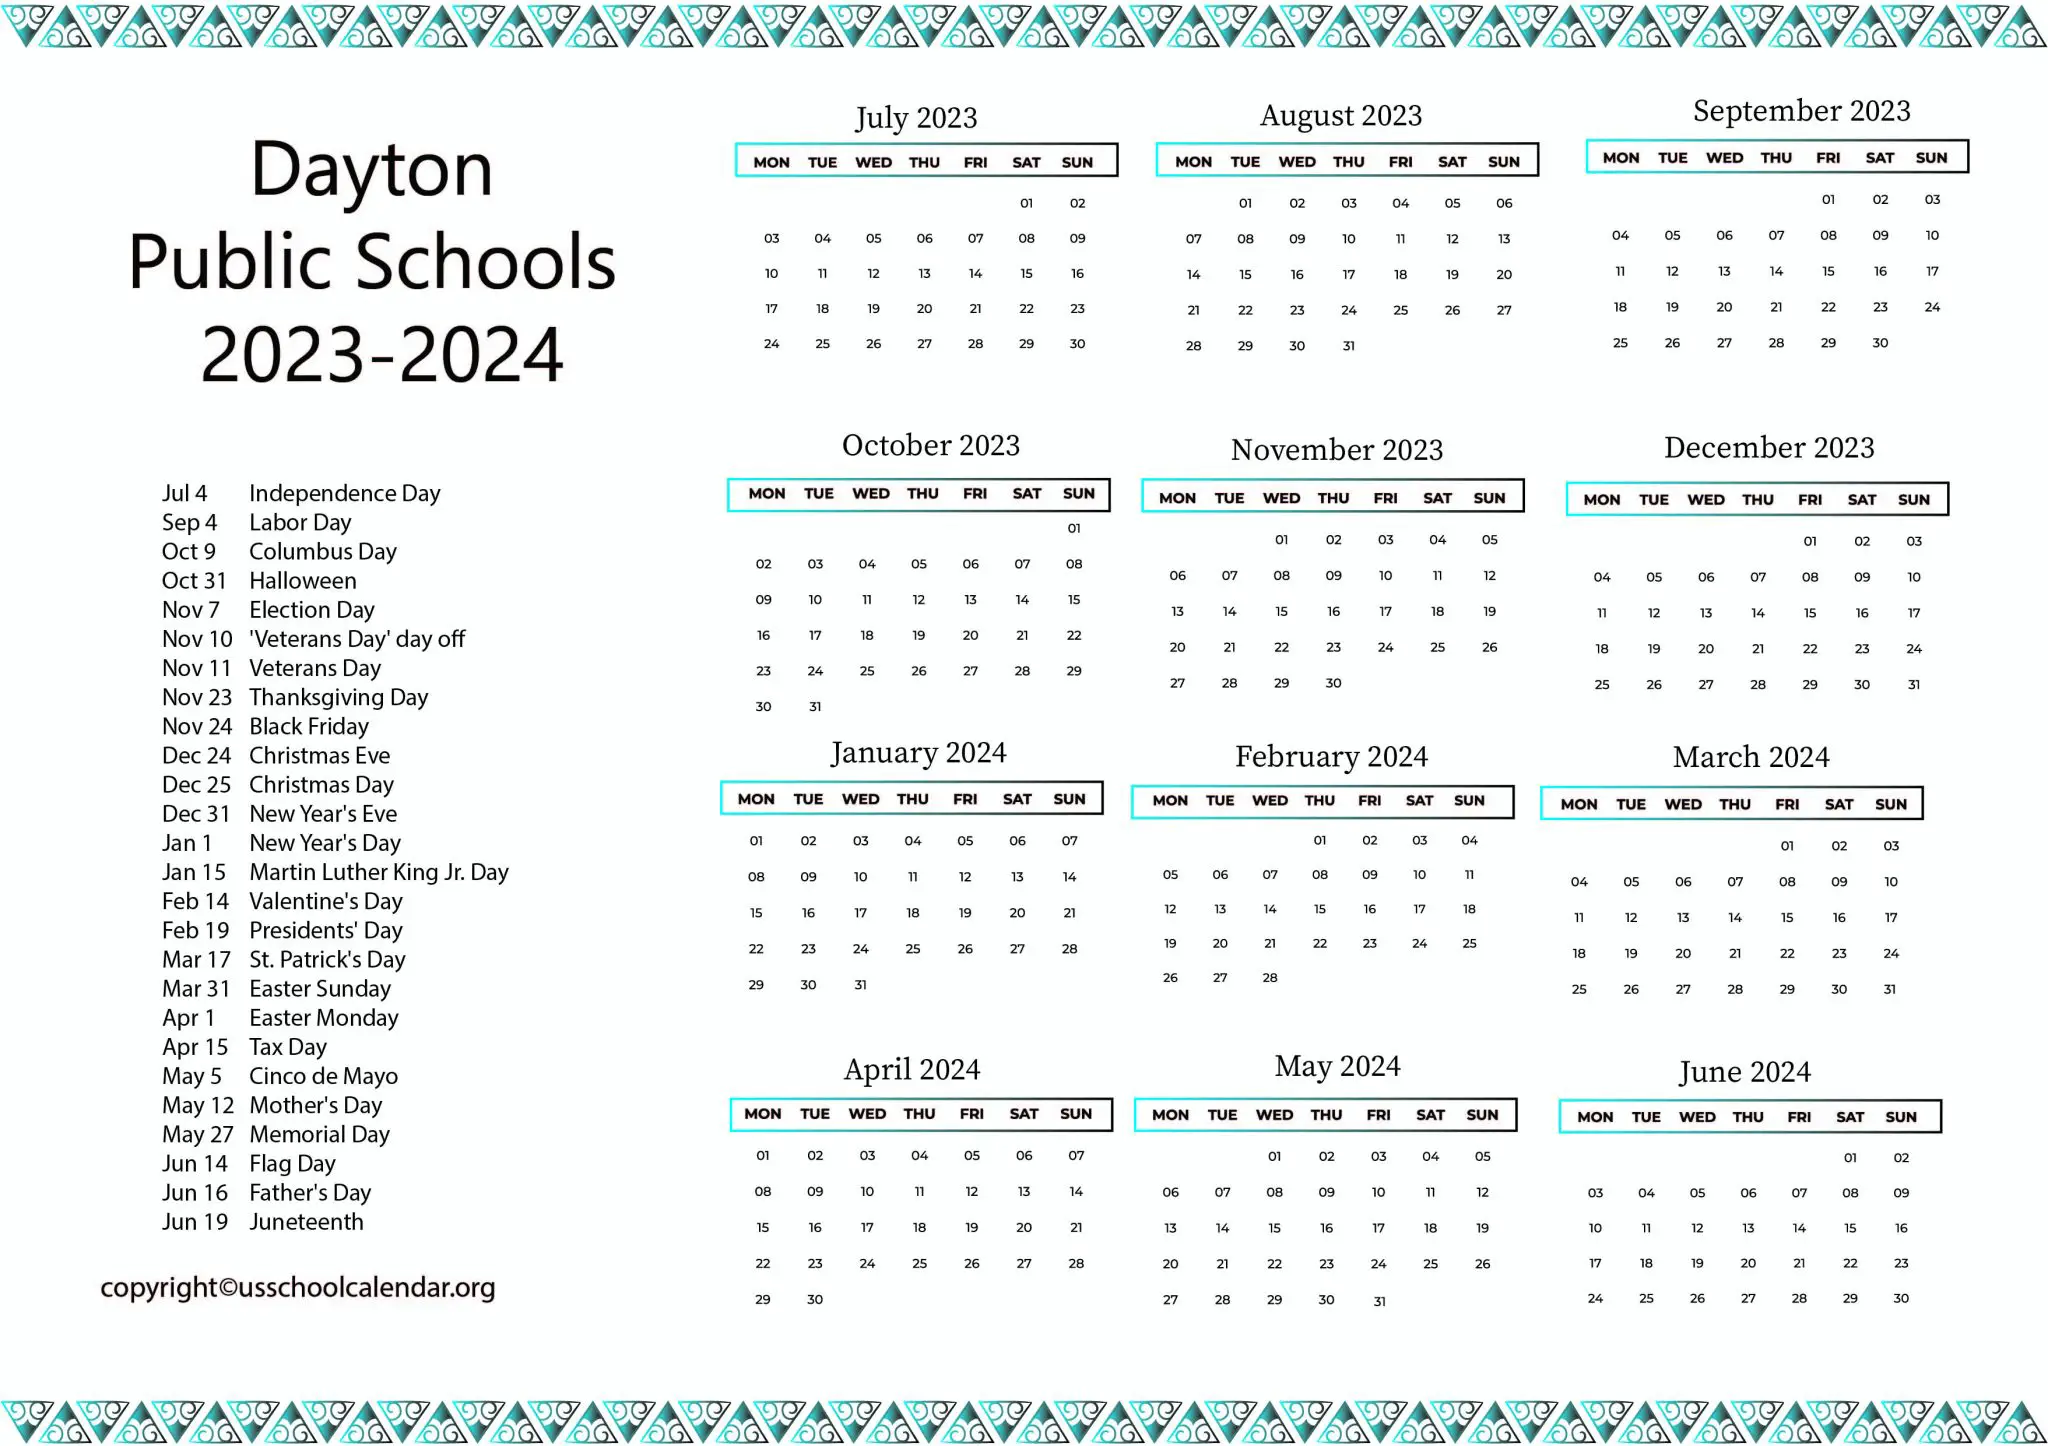 dayton-public-schools-calendar-with-holidays-2023-2024